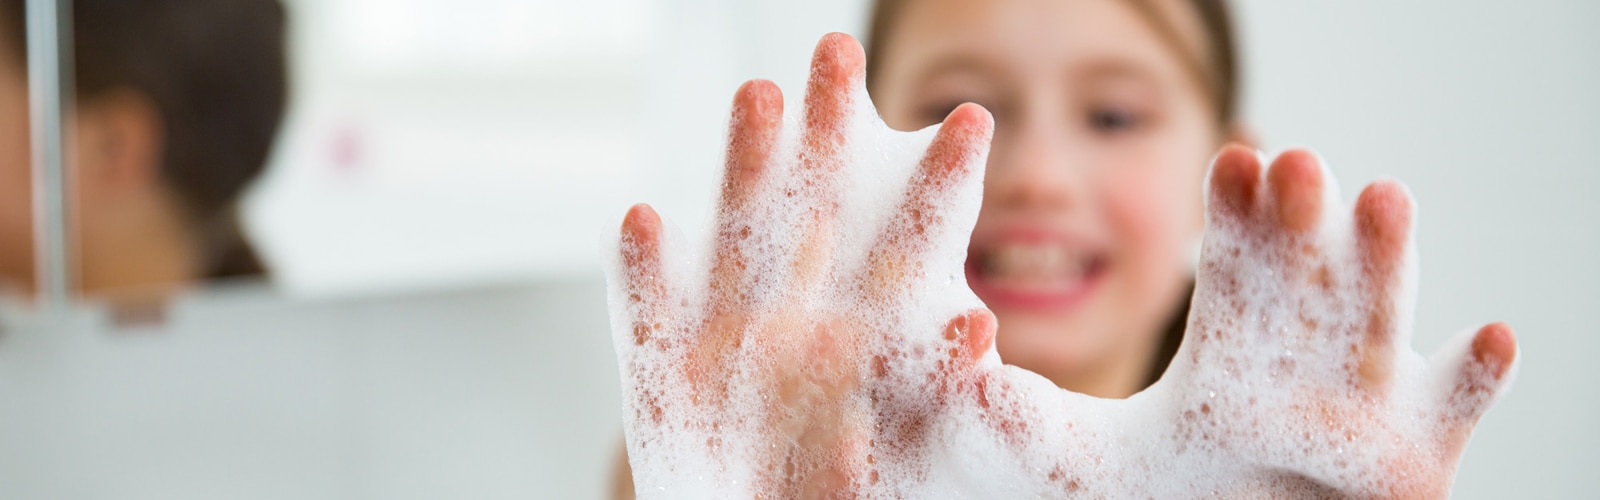 Le mani di una ragazza coperte di schiuma di sapone